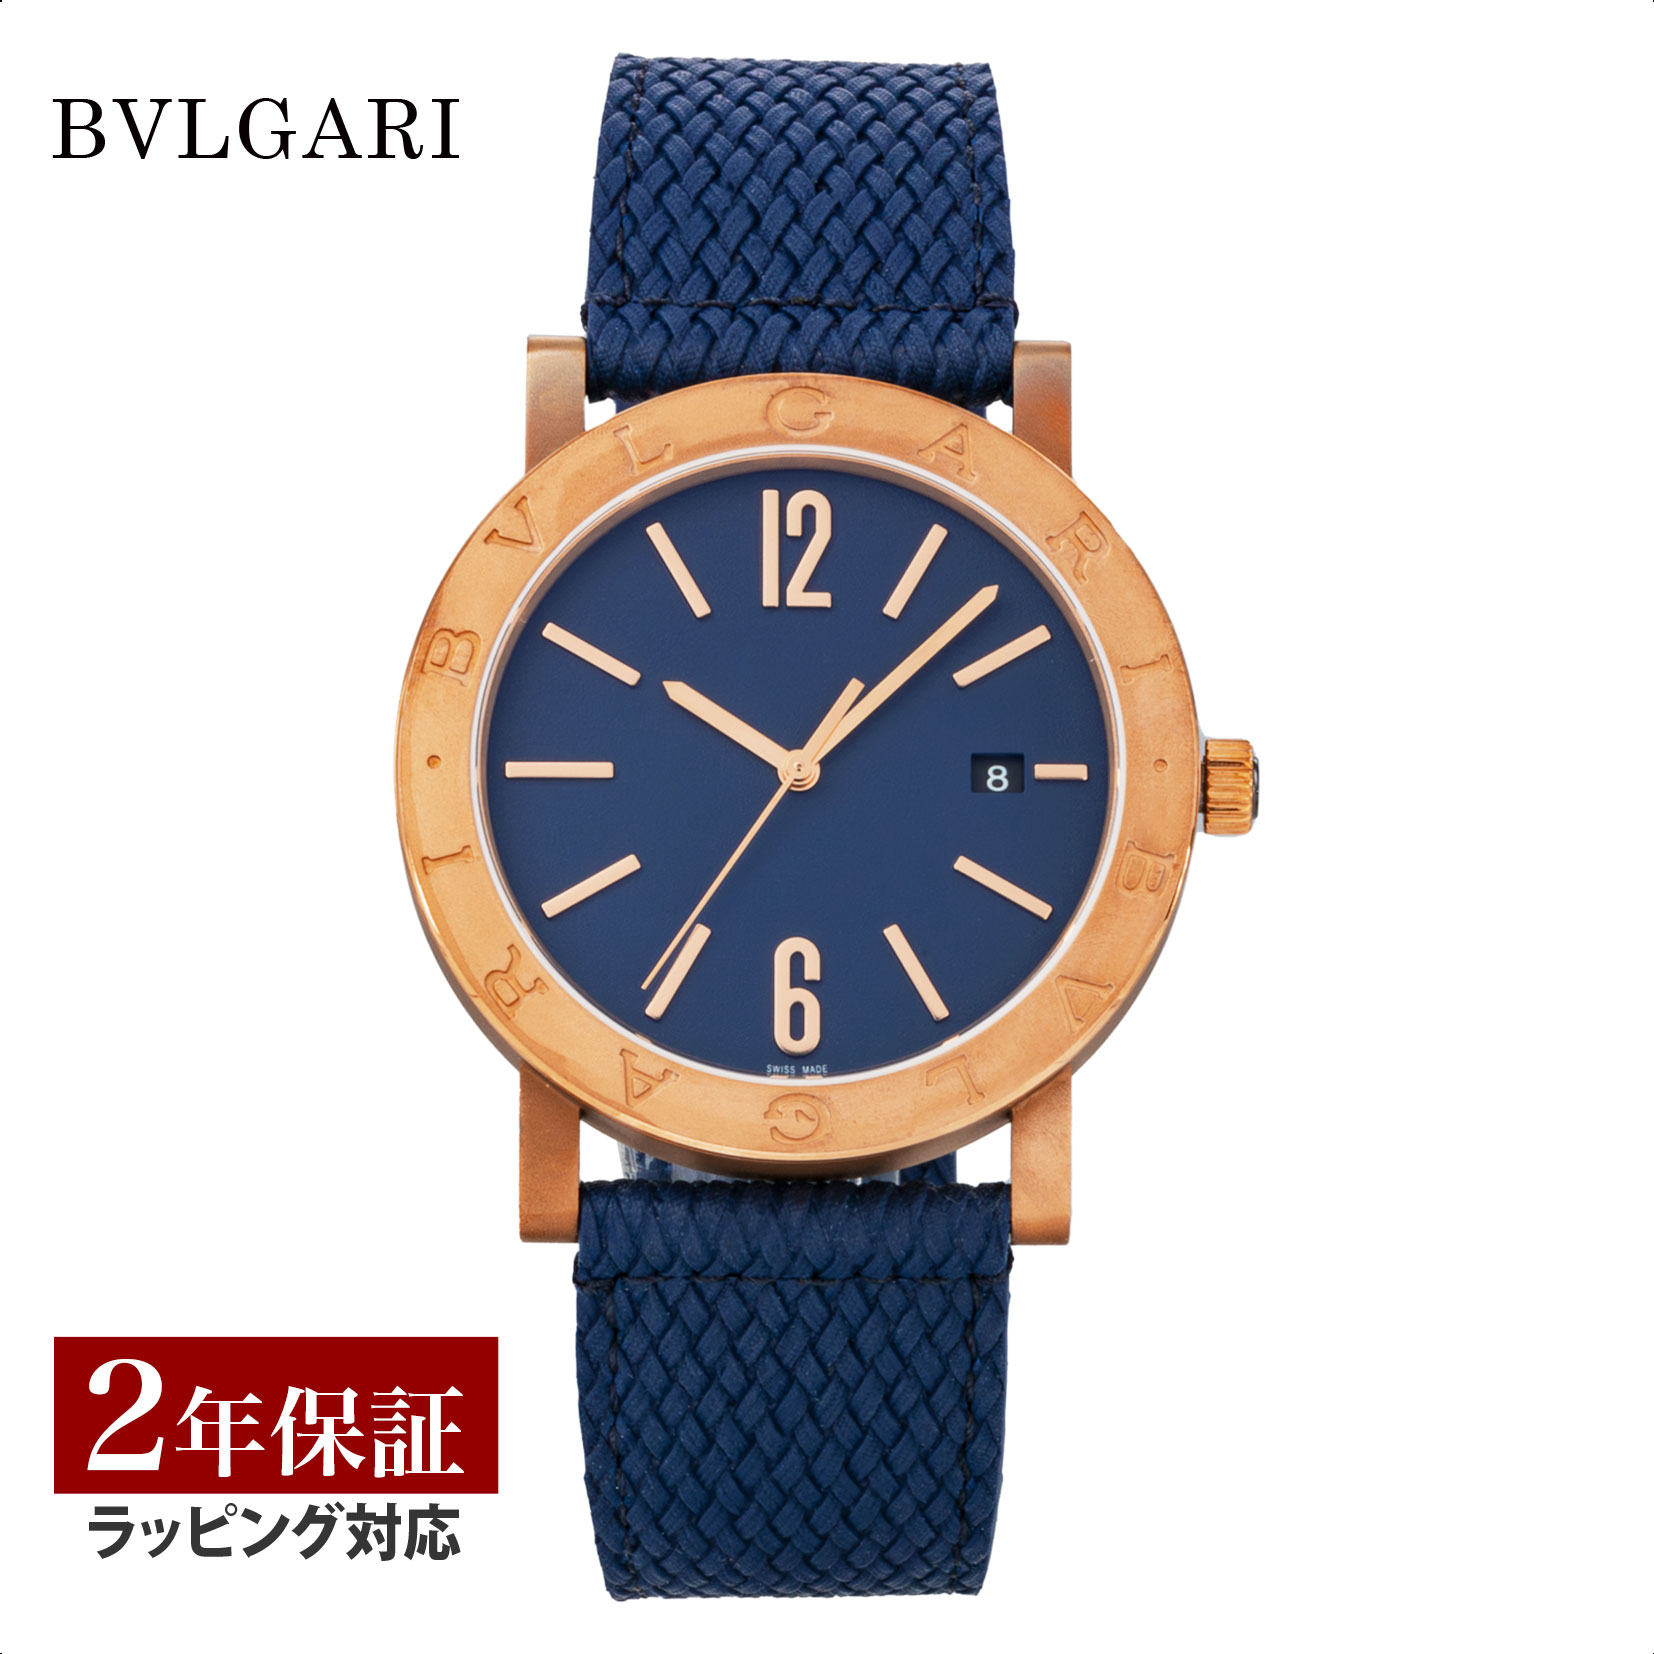 ブルガリブルガリ 腕時計（メンズ） ブルガリ BVLGARI メンズ 時計 ブルガリブルガリ Bvlgari Bvlgari 自動巻 ブルー BB41C3BSD/MB 腕時計 高級腕時計 ブランド